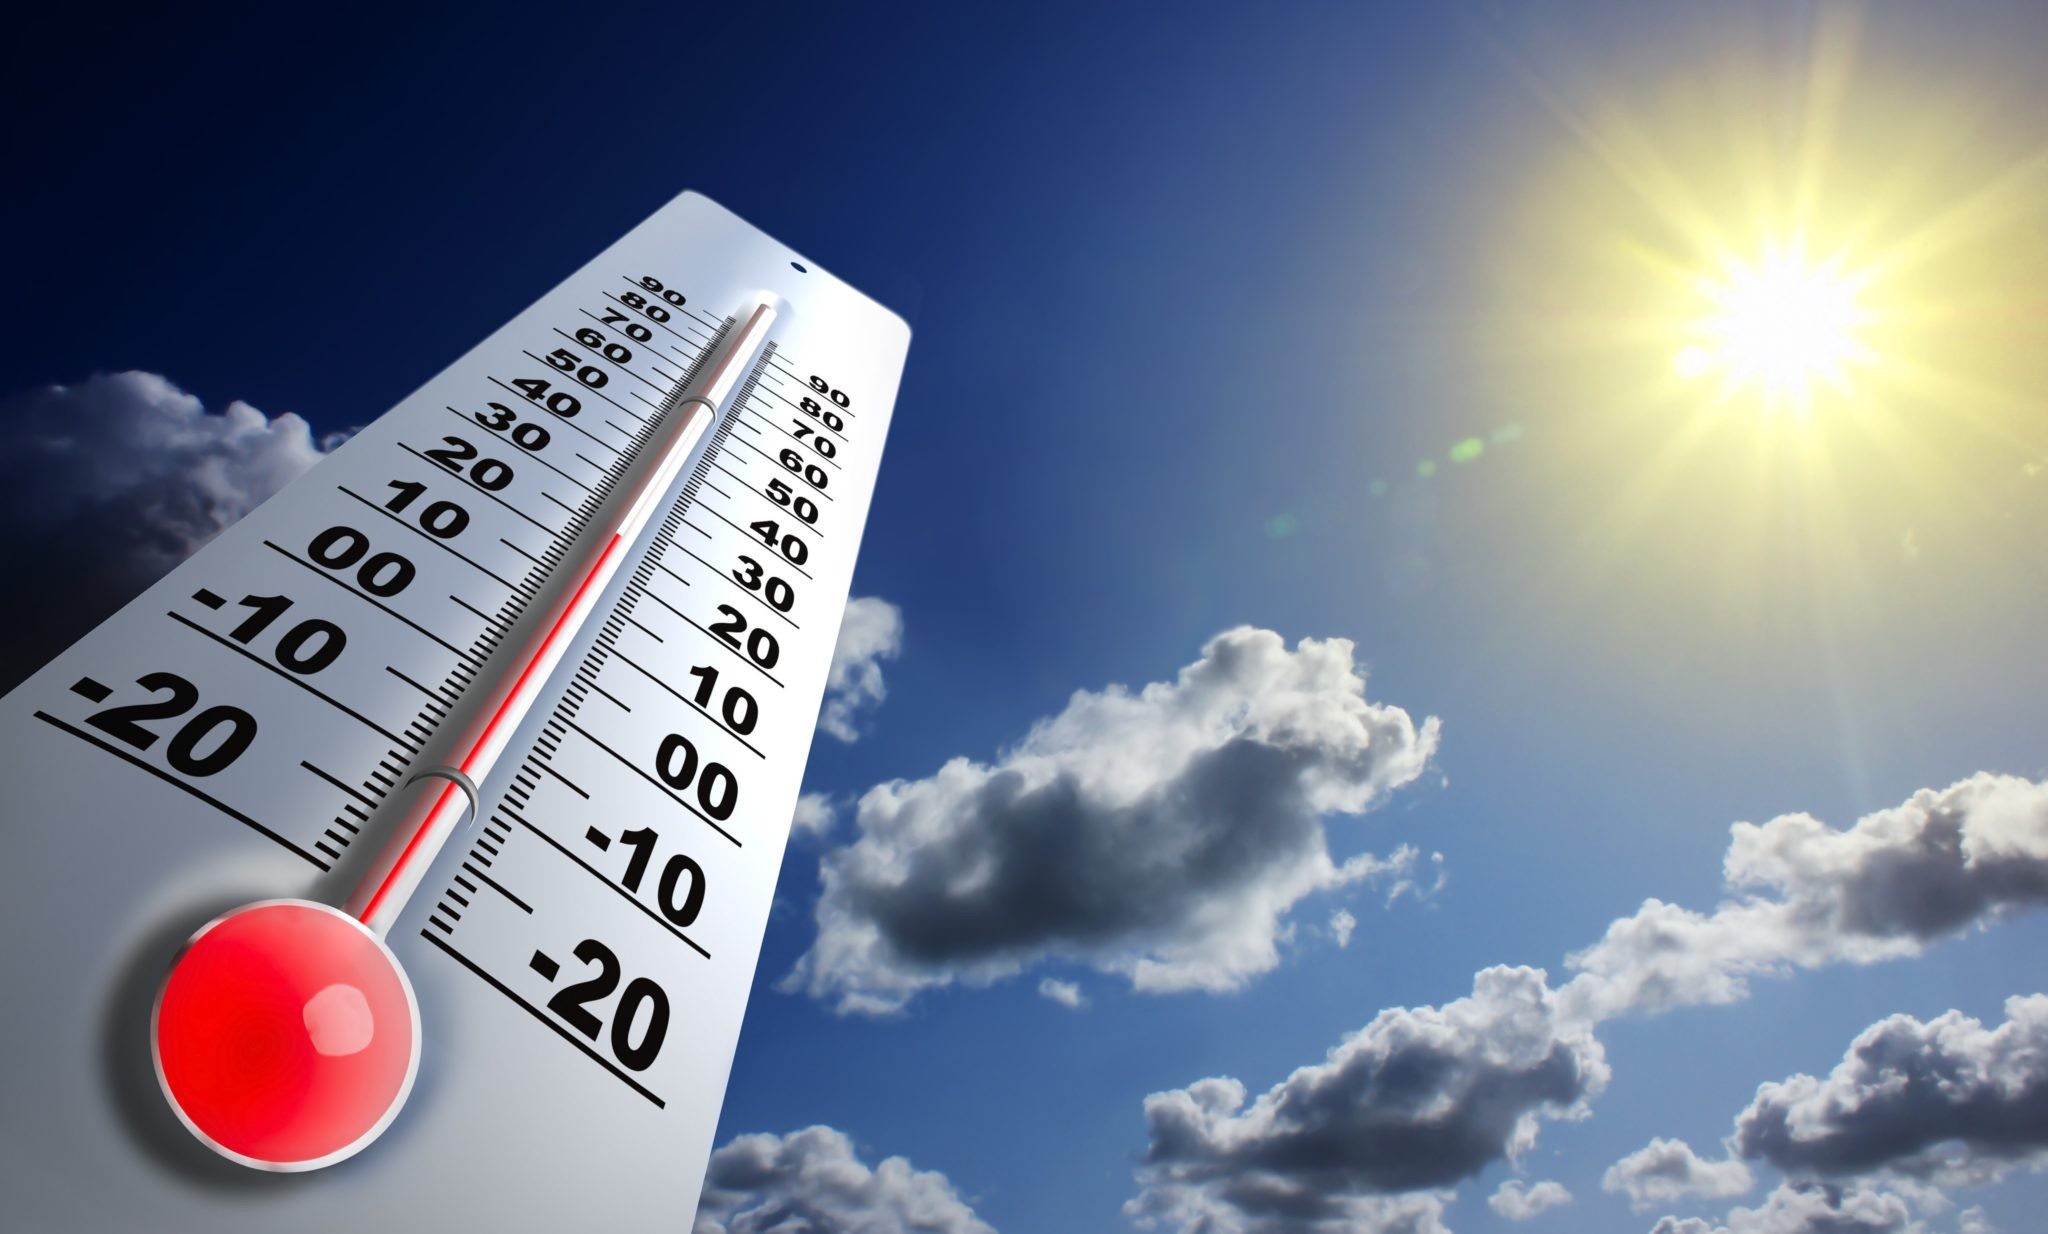 حالة الطقس: انخفاض ملموس على درجات الحرارة لتصبح أقل من معدلها بحدود 4 درجات